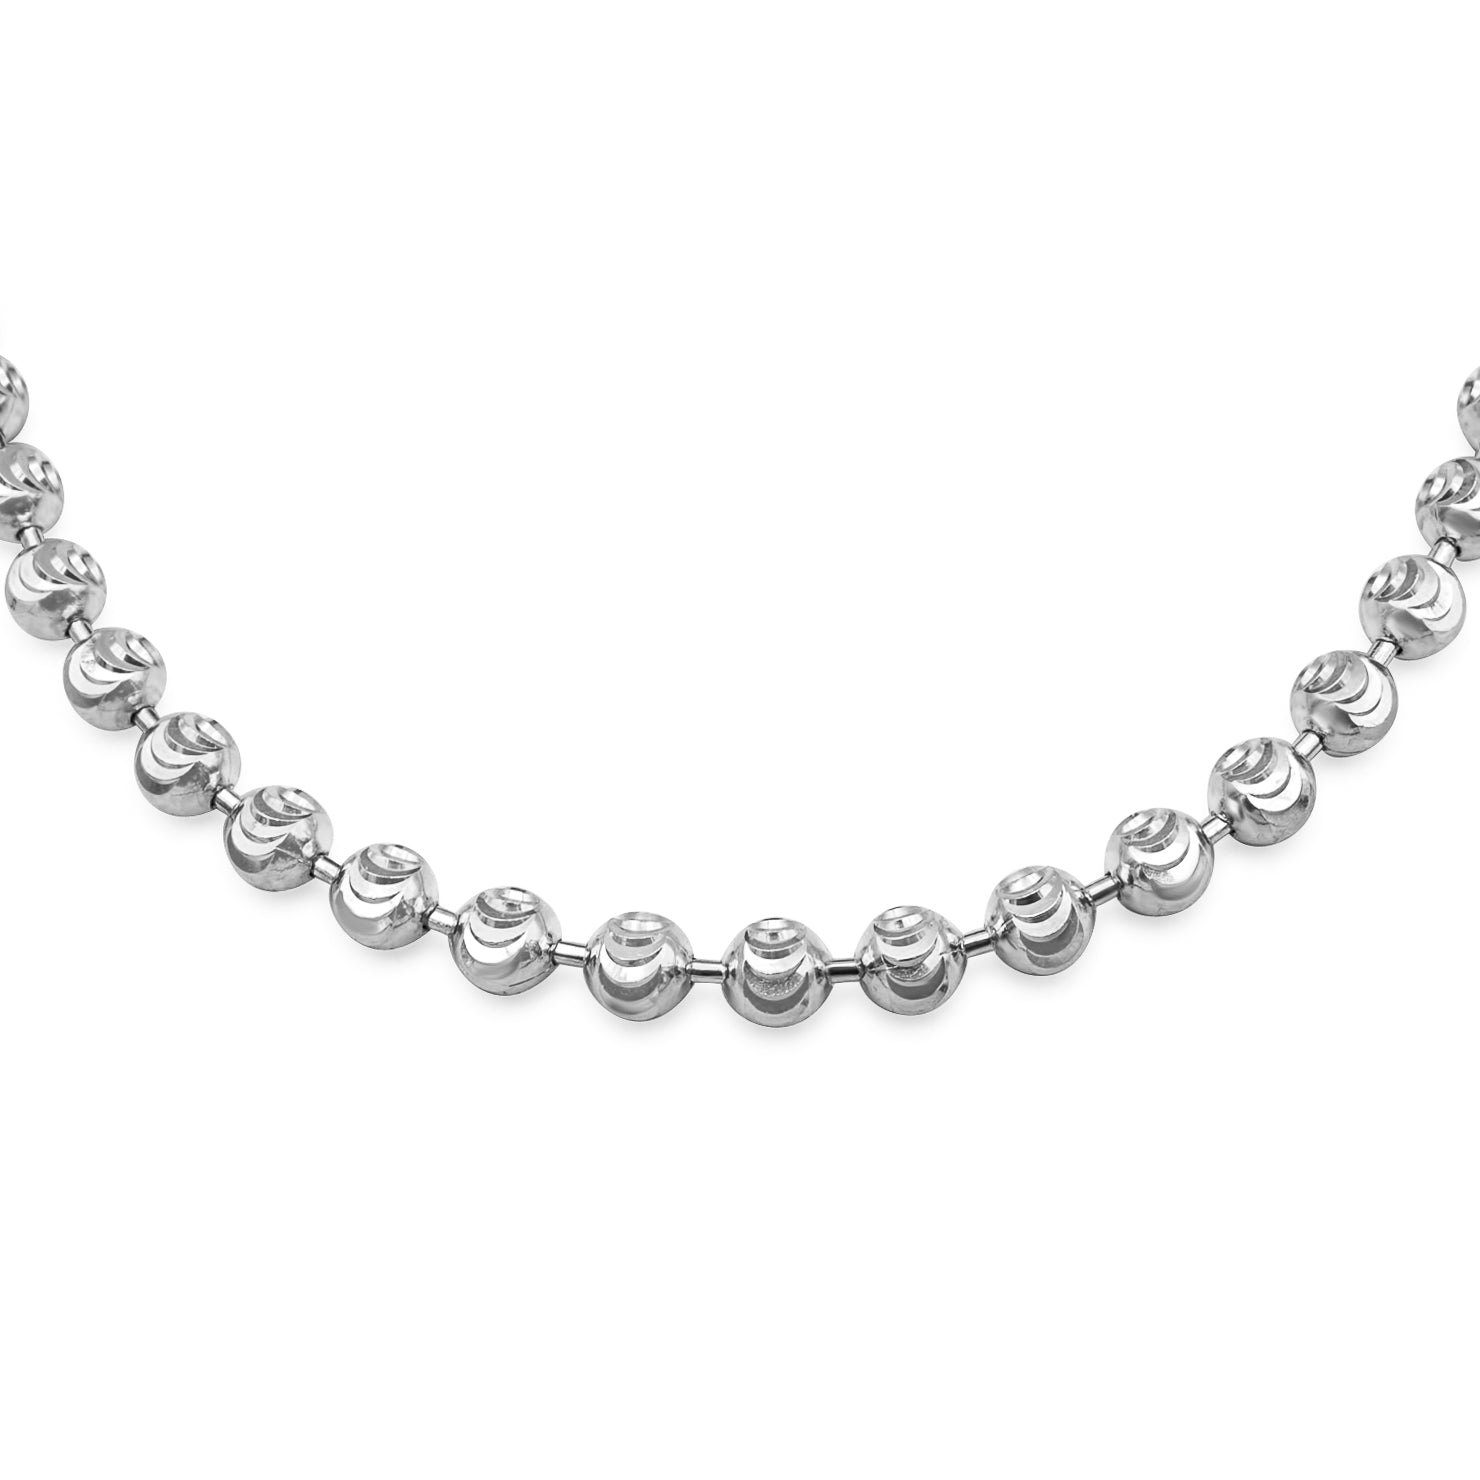 4mm Diamond Beads Bracelet White Gold 8